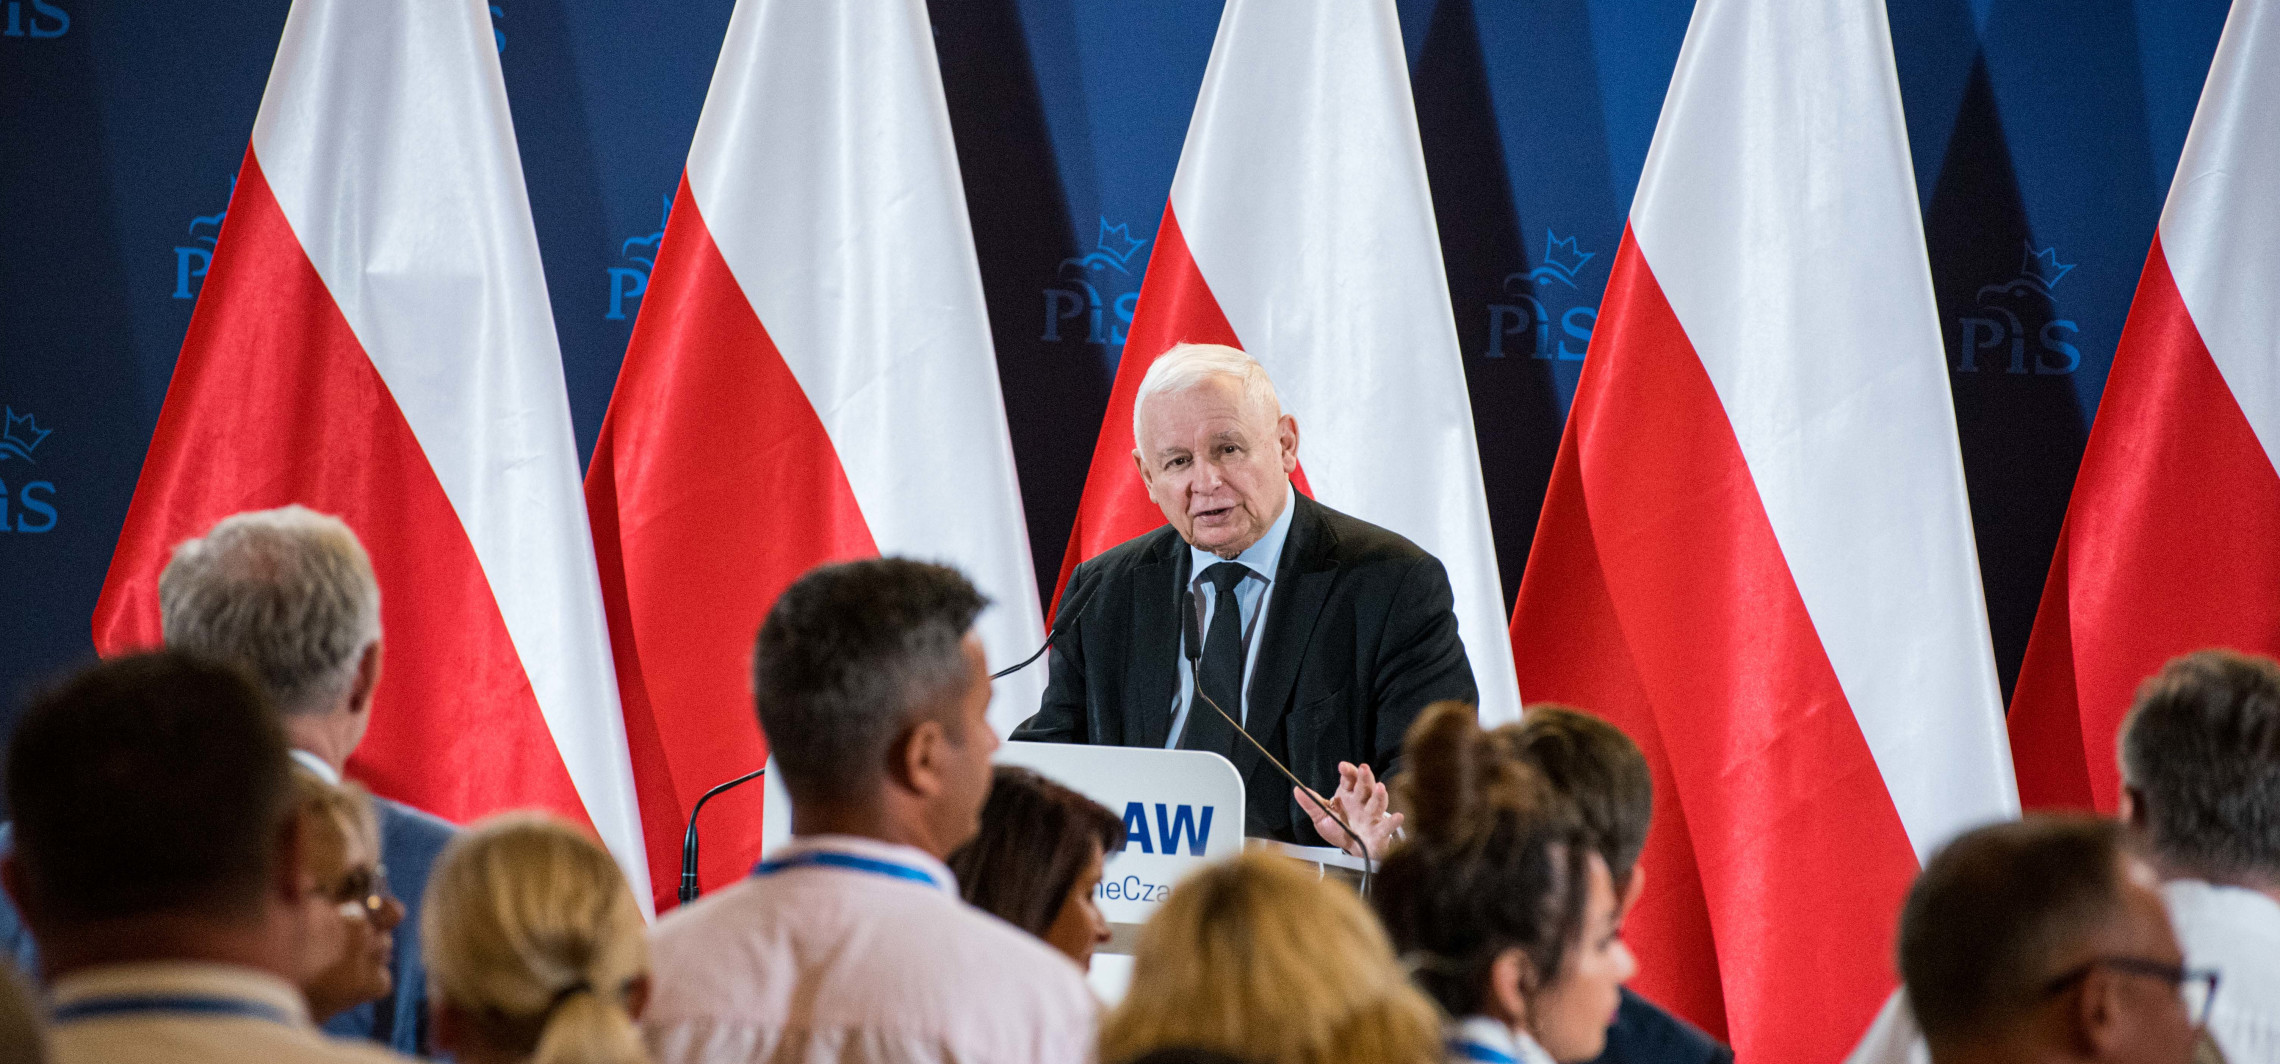 Inowrocław - Spotkanie z Kaczyńskim okiem uczestnika